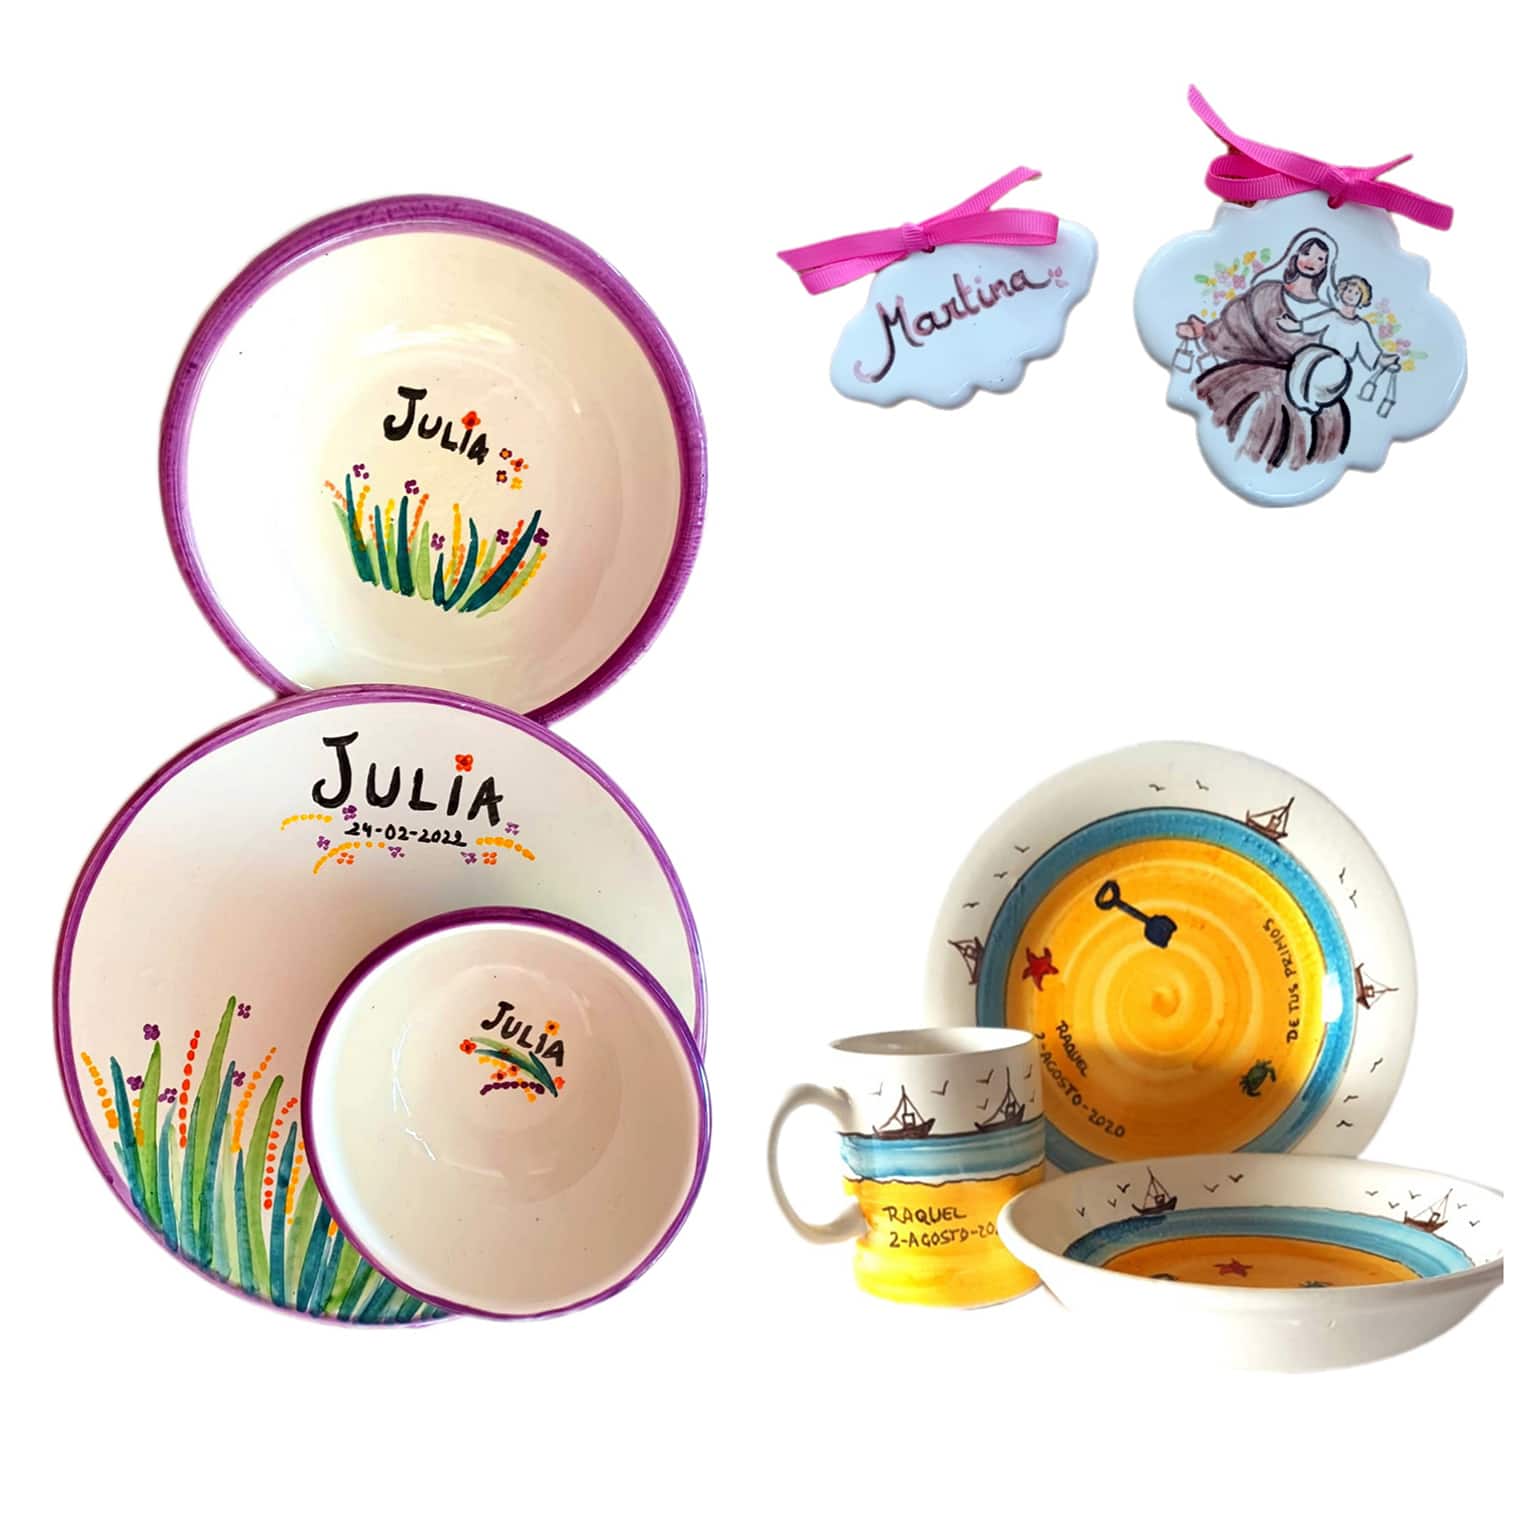 Vajillas personalizadas, regalos personalizados, vajillas artesanas, regalos bebe, regalos comunión, vajilla niños, vajillas bebé